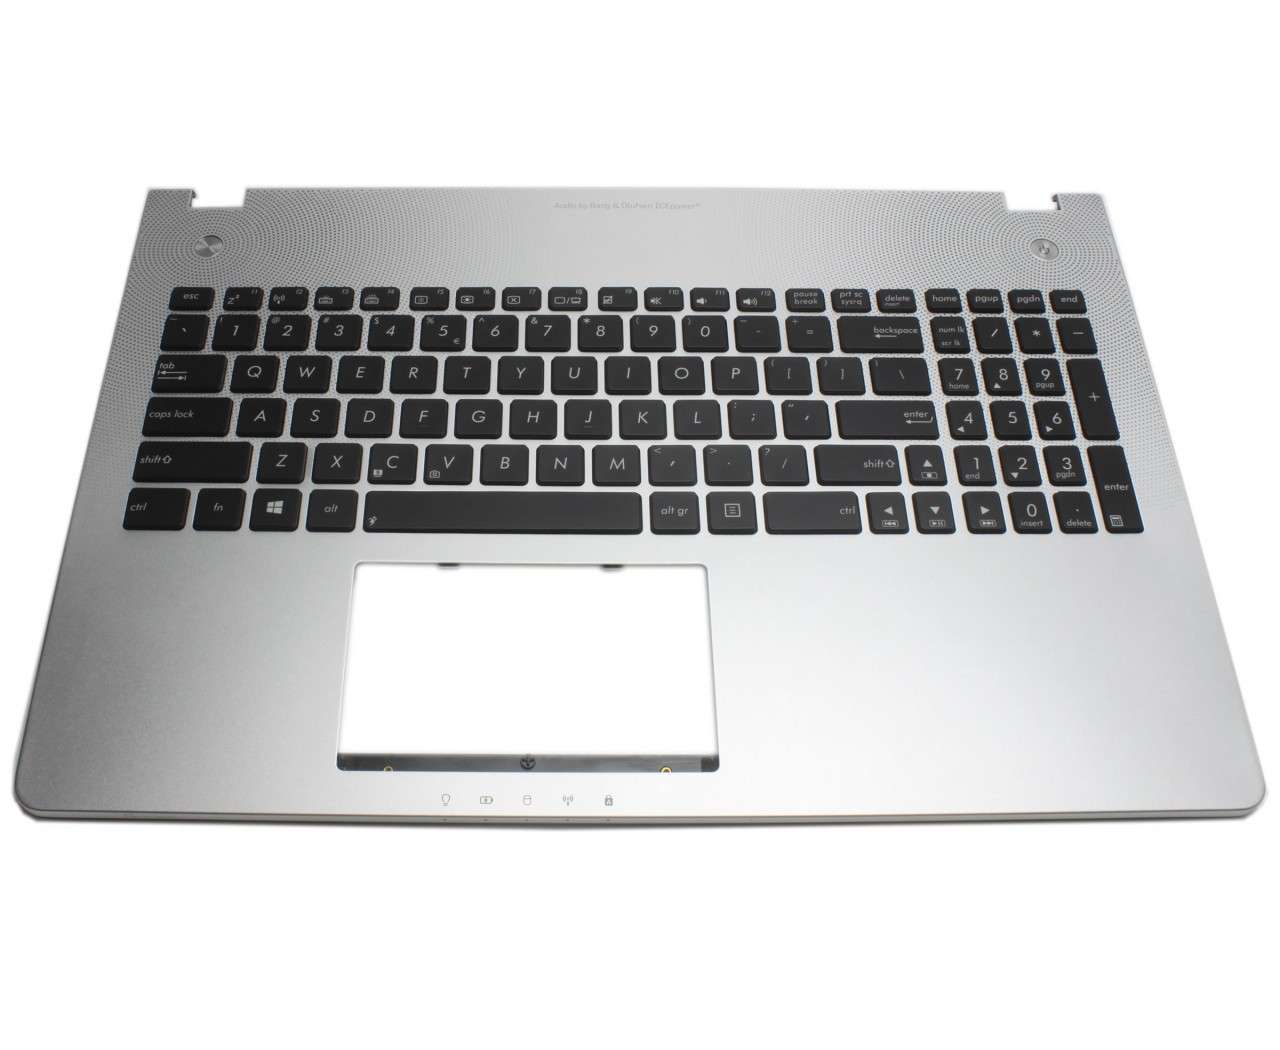 Tastatura Asus N56V8 neagra cu Palmrest argintiu iluminata backlit fara Touchpad